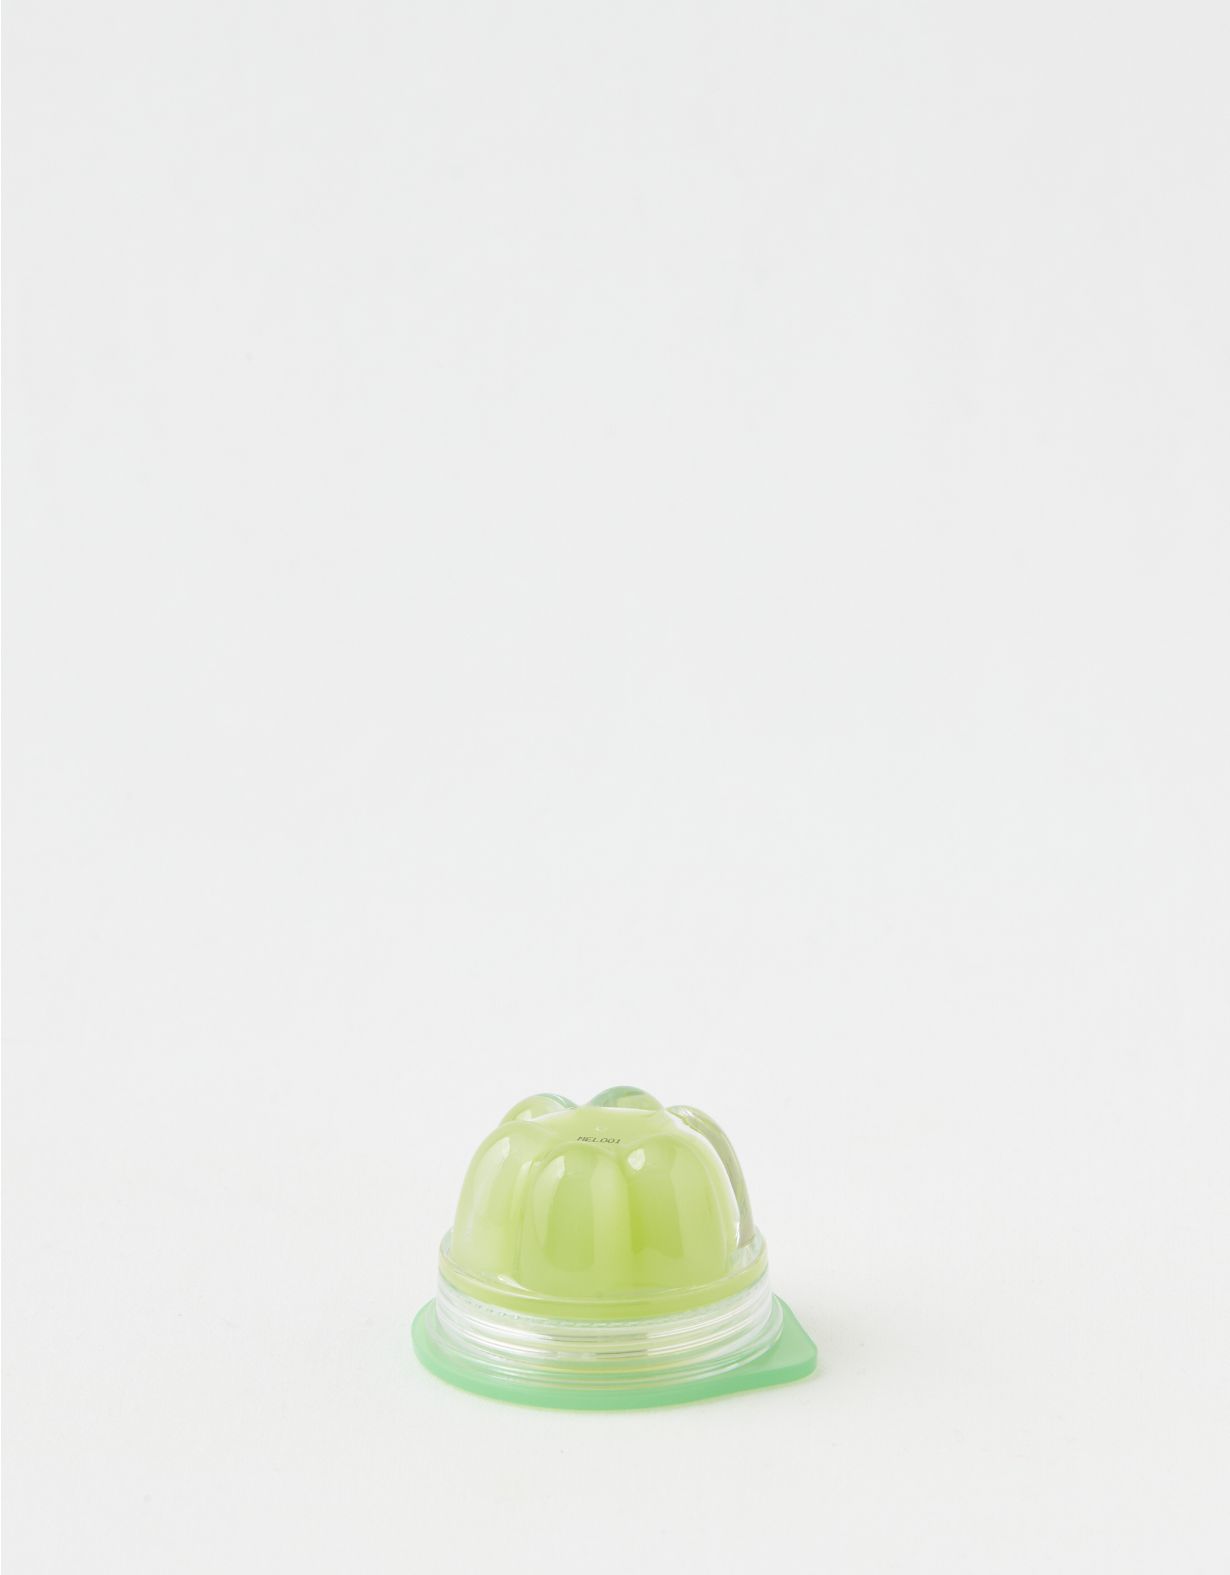 Tony Moly Jelly Lip Melt - Green Apple